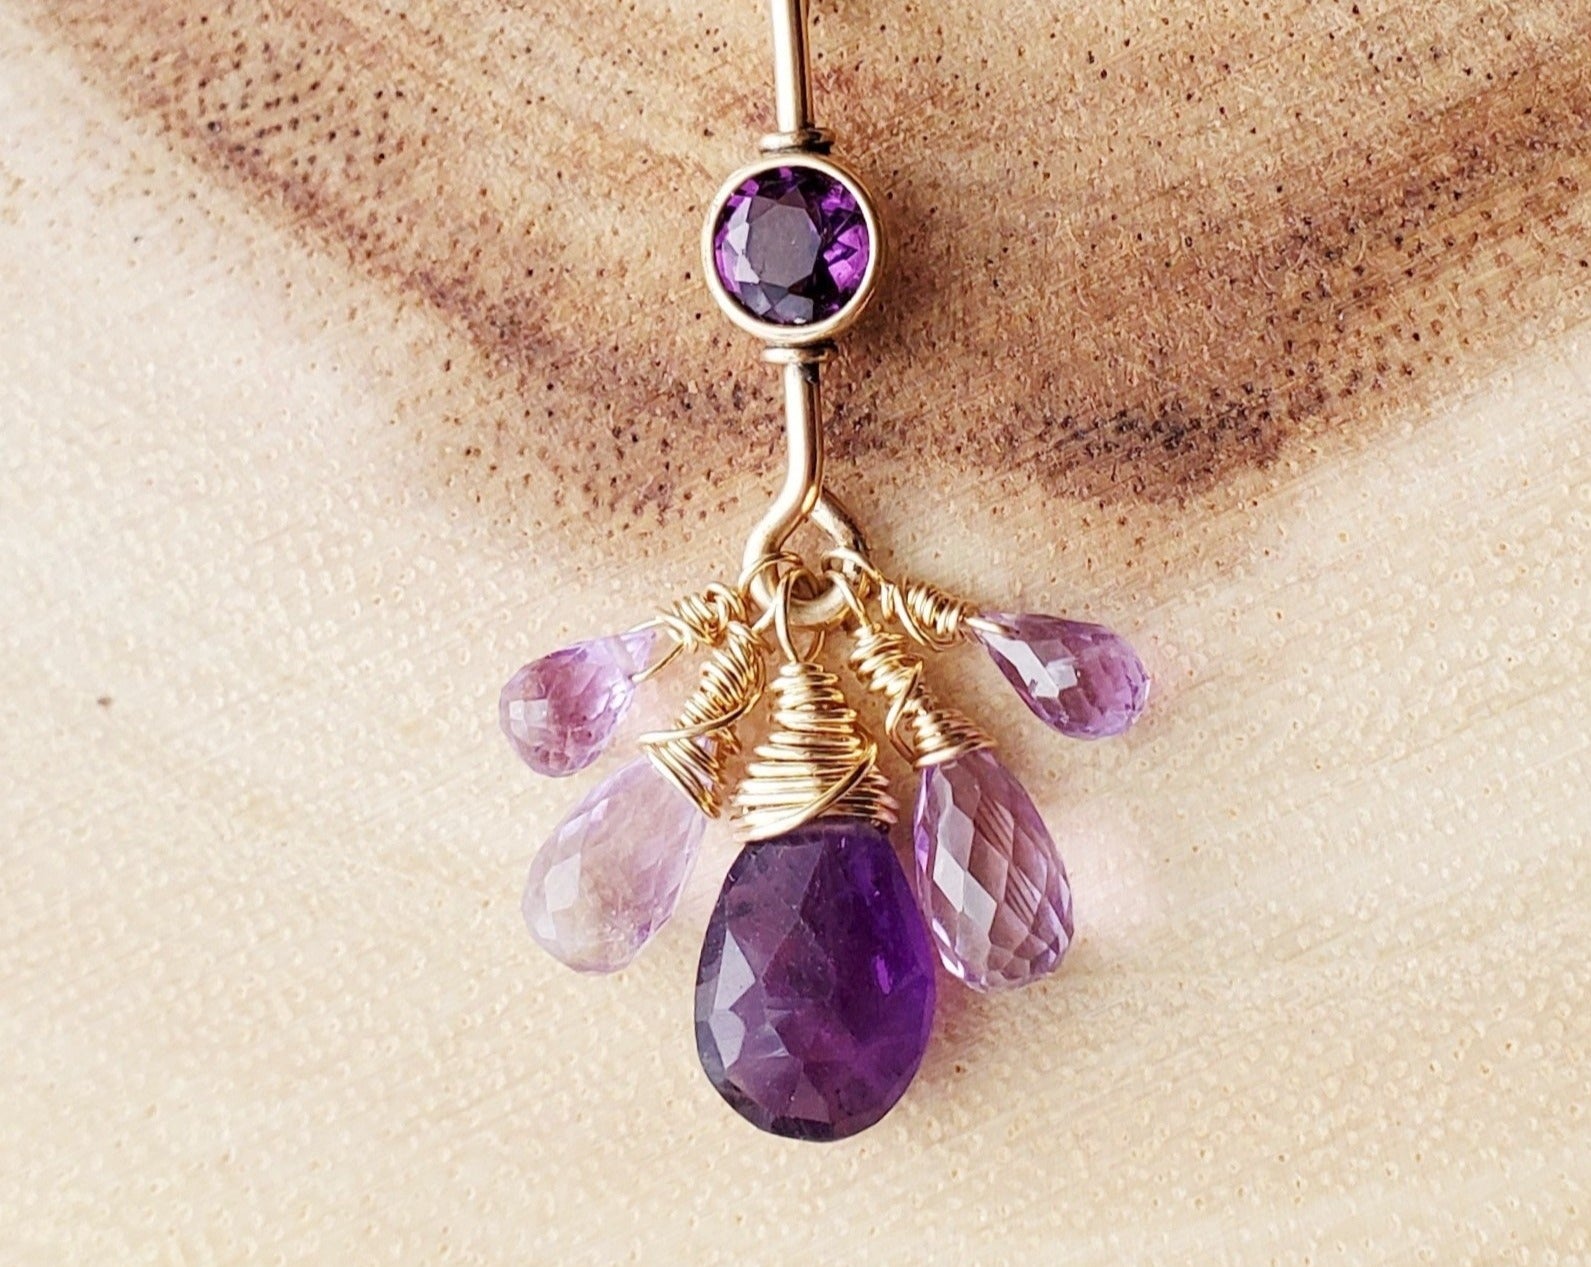 Royal Amethyst, Mystic Topaz Vintage Gold Filled Pendant Necklace made with Vintage 14k Gold Filled & Purple Gemstones 